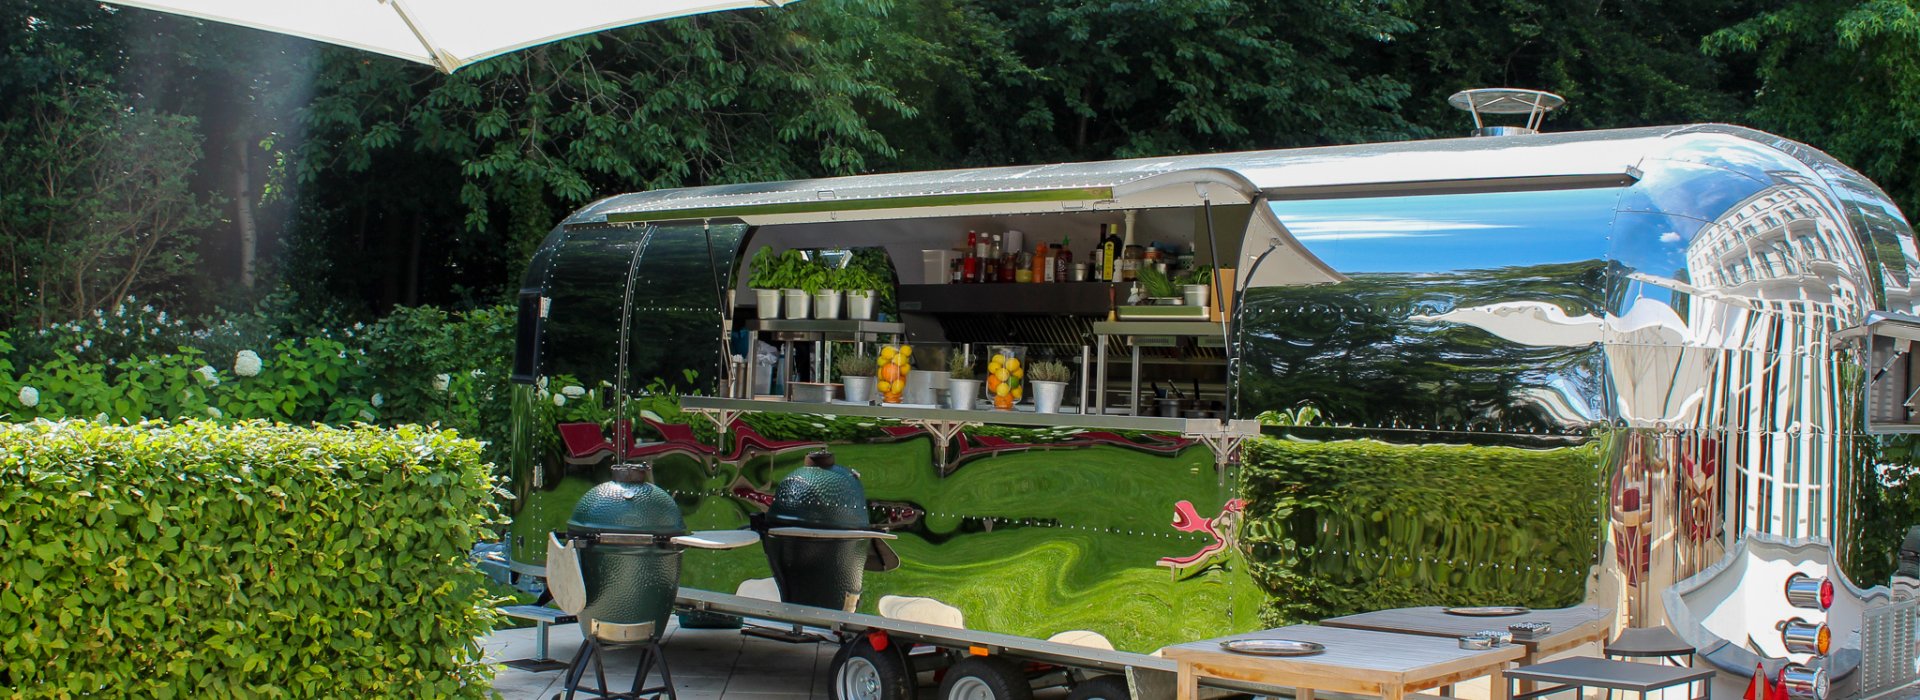 Grandhotel Heiligendamm - Food Truck